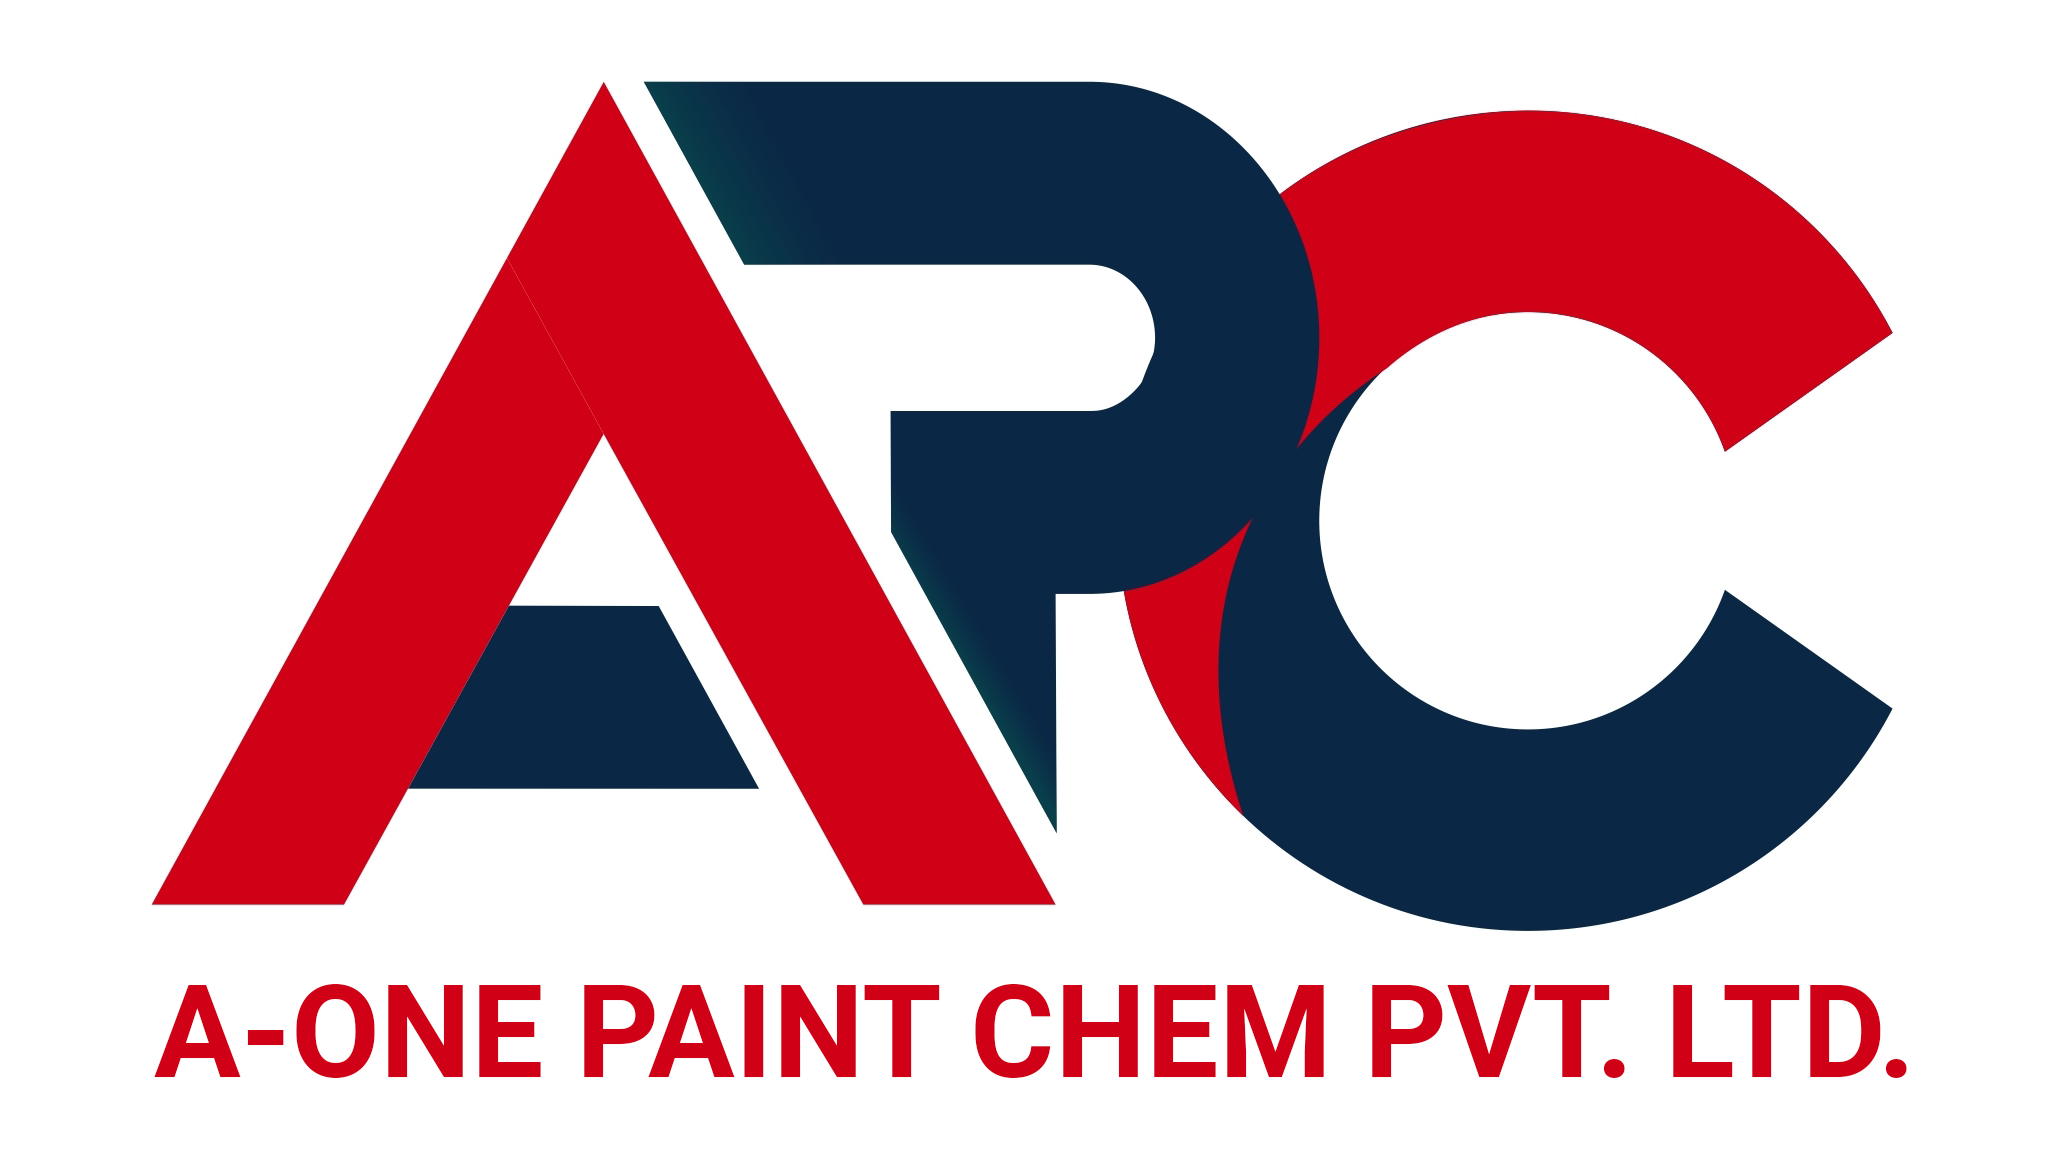 A-One Paint Chem Pvt Ltd